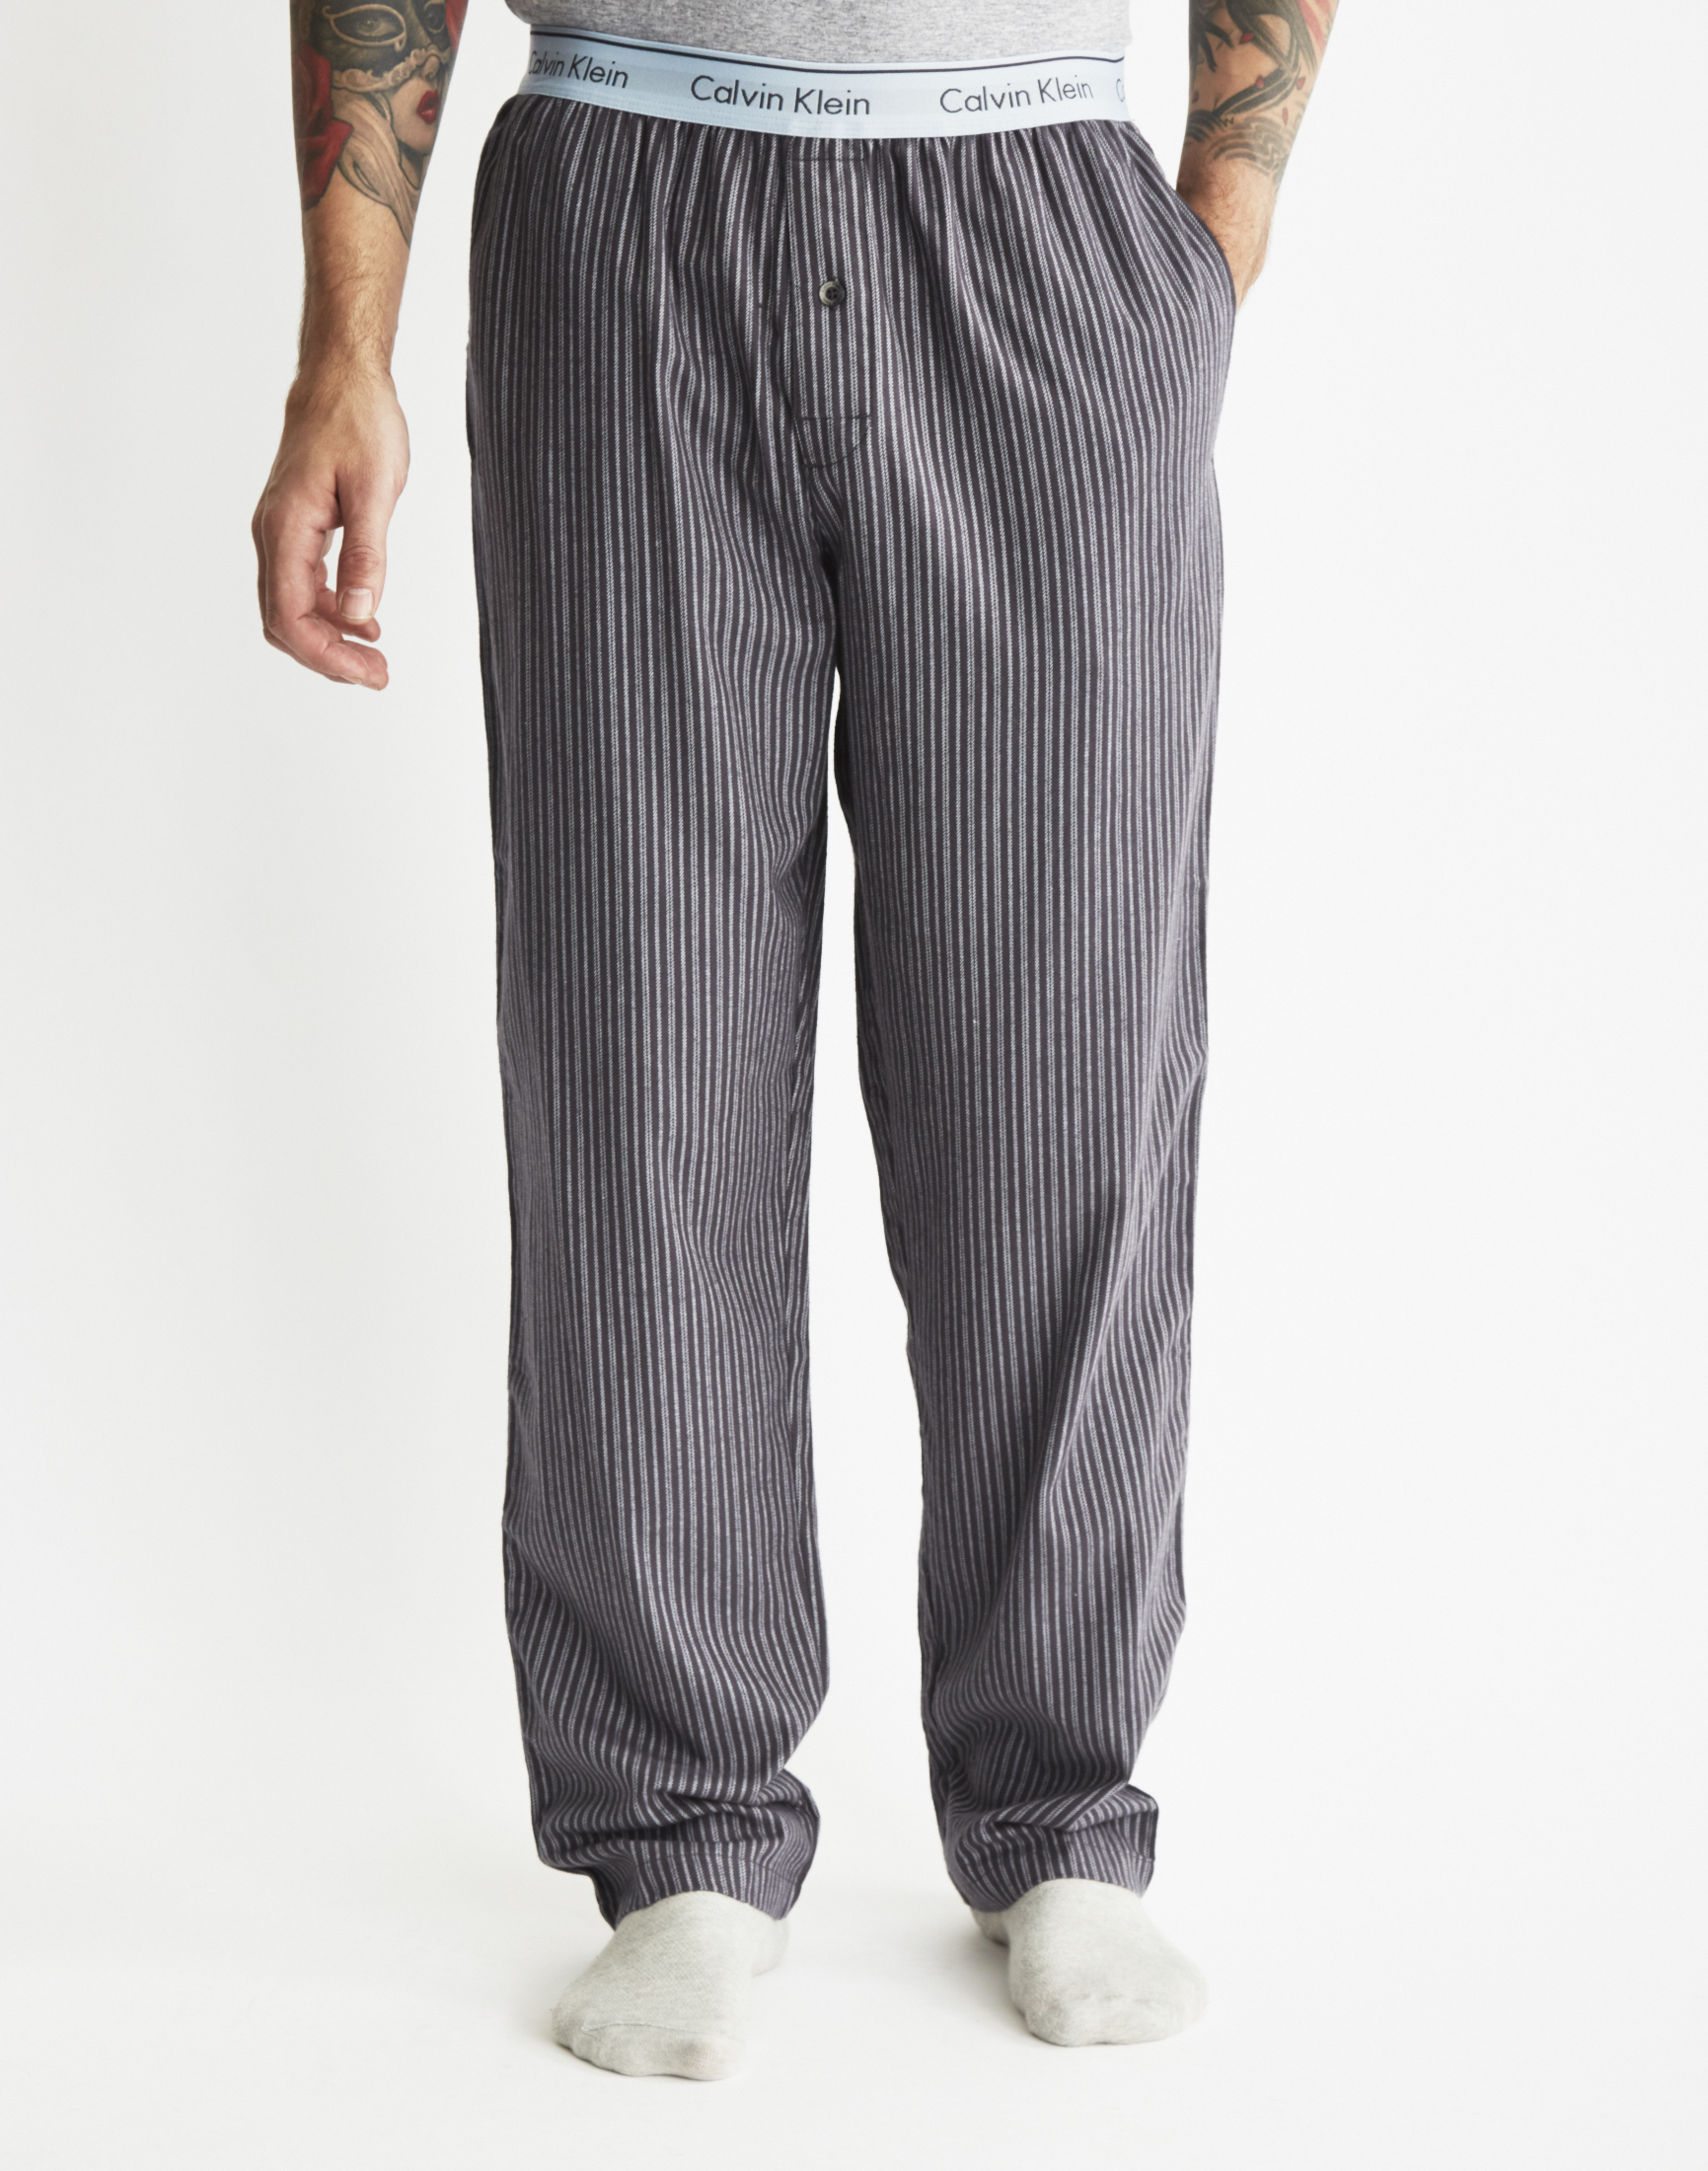 Lyst - Calvin Klein Flannel Sleepwear Pants for Men